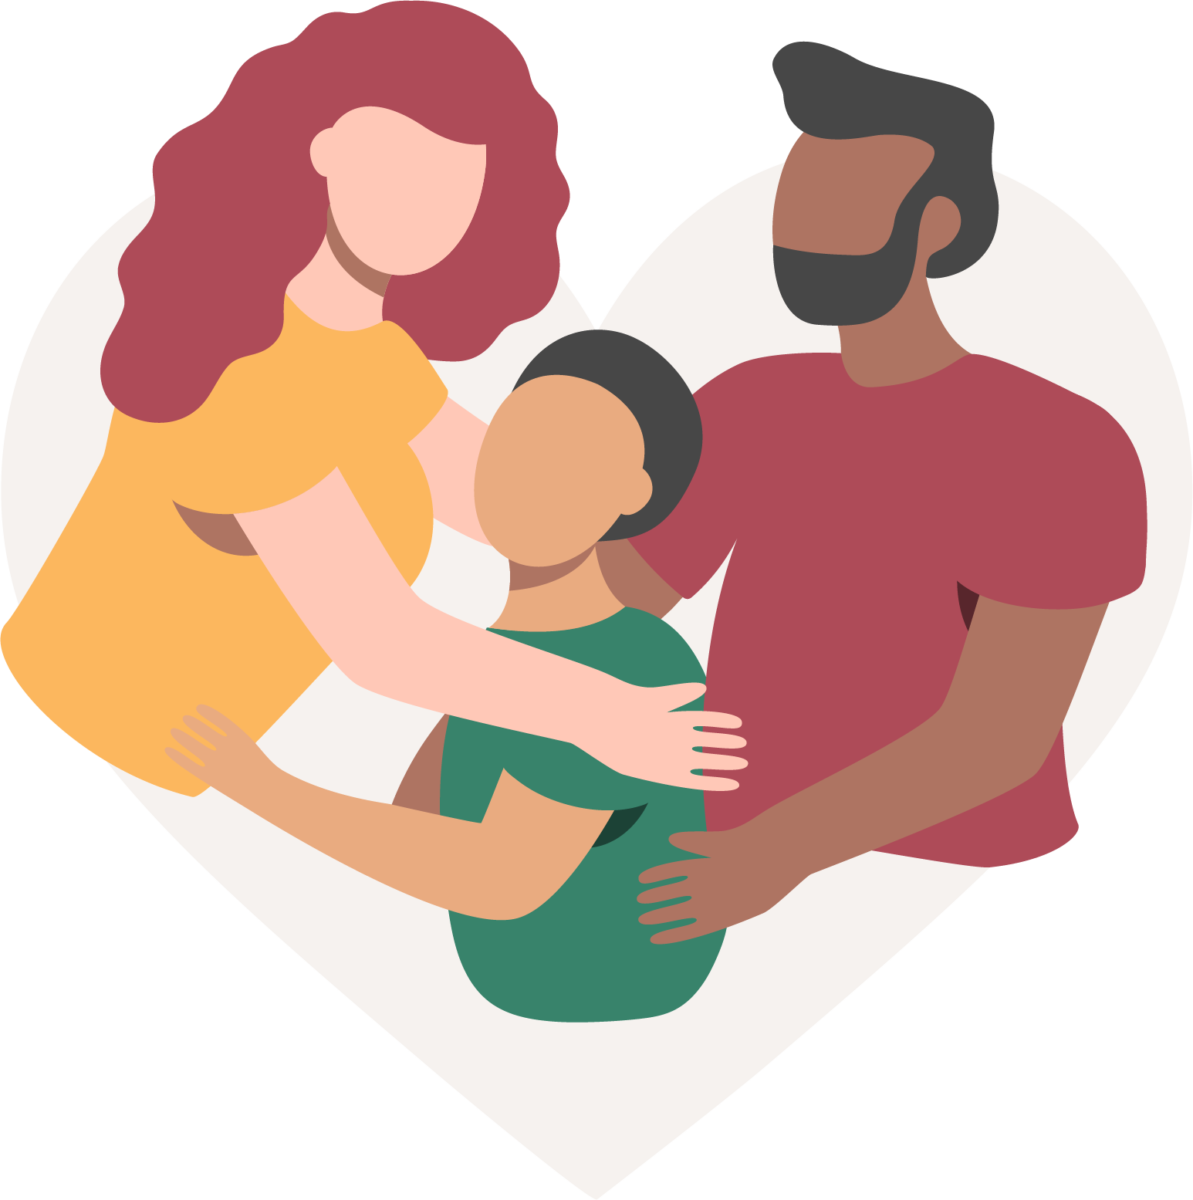 una mujer con cabello rojo y camisa amarilla y un hombre con cabello y barba negros abrazan a un niño con camisa verde y cabello negro que representa una unidad familiar